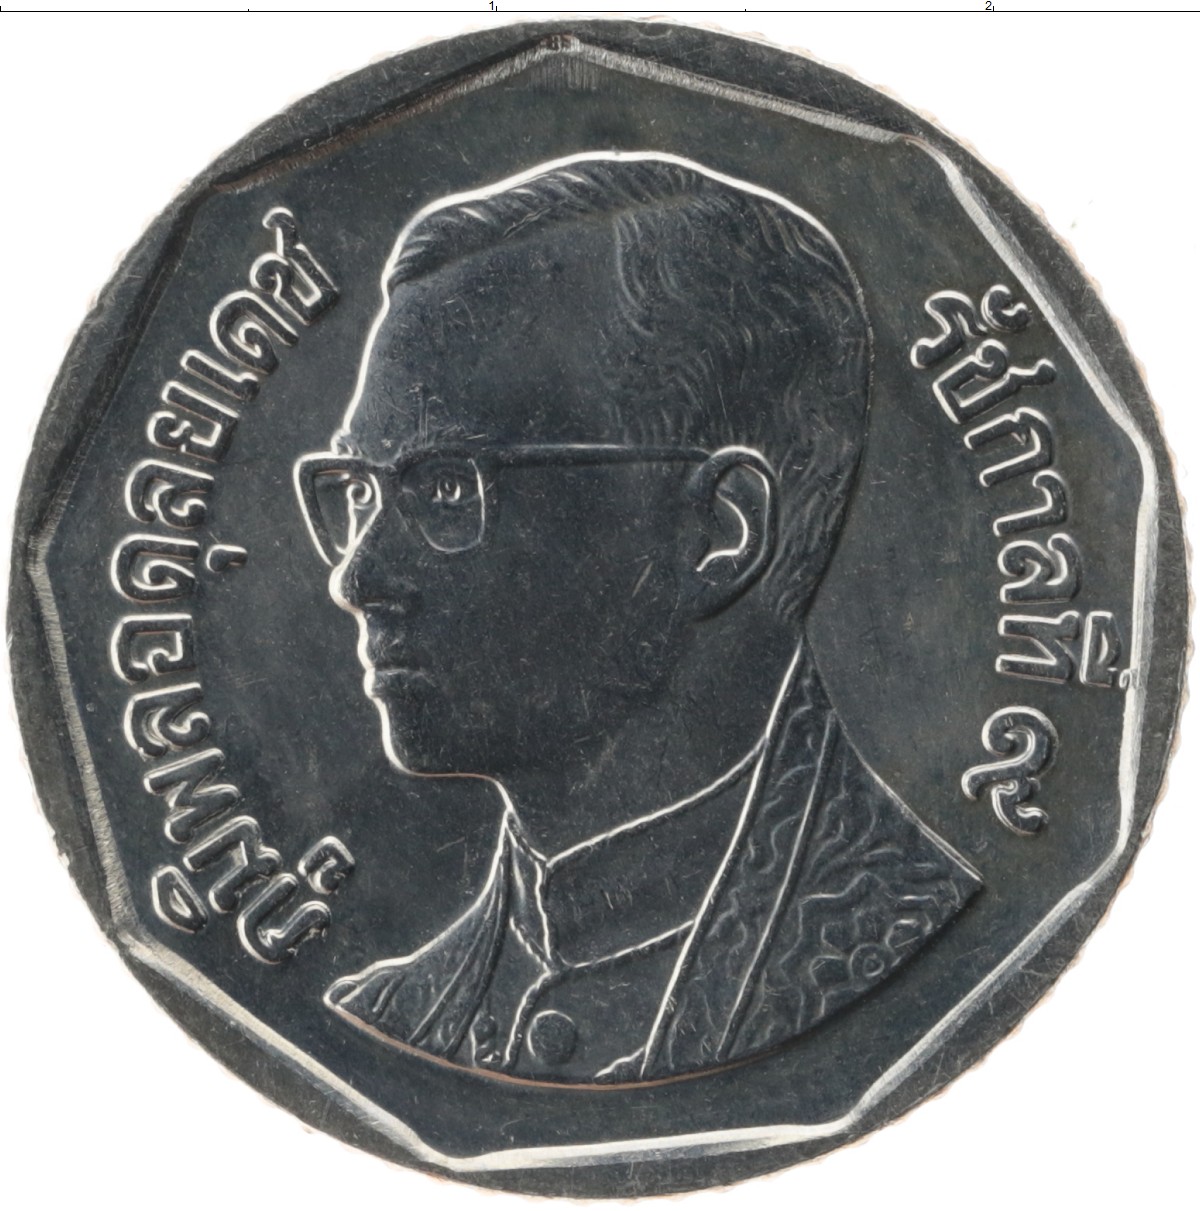 5 батов в рублях. Таиландская монета 5 бат. Монетка Тайланд 5 бат. Тайские монеты 5 бат. Таиланд 5 бат 2007.